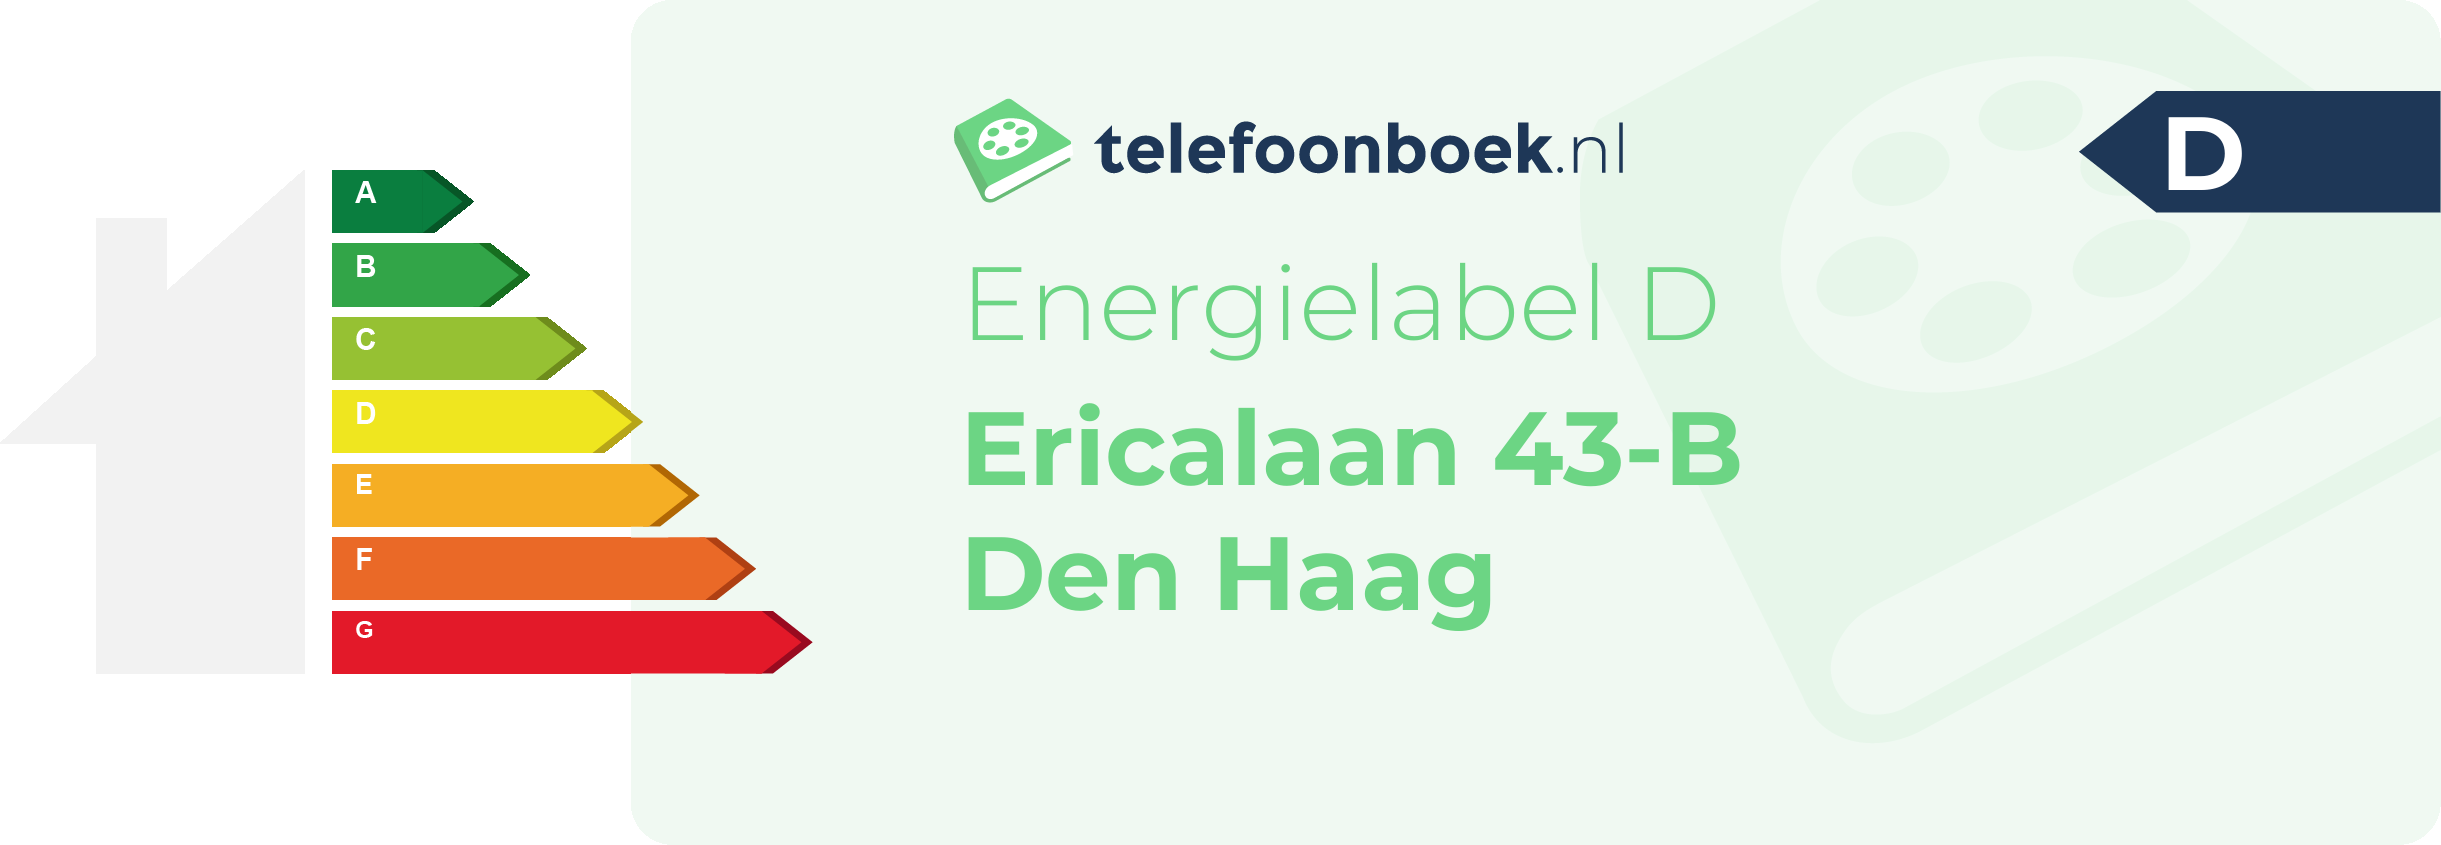 Energielabel Ericalaan 43-B Den Haag